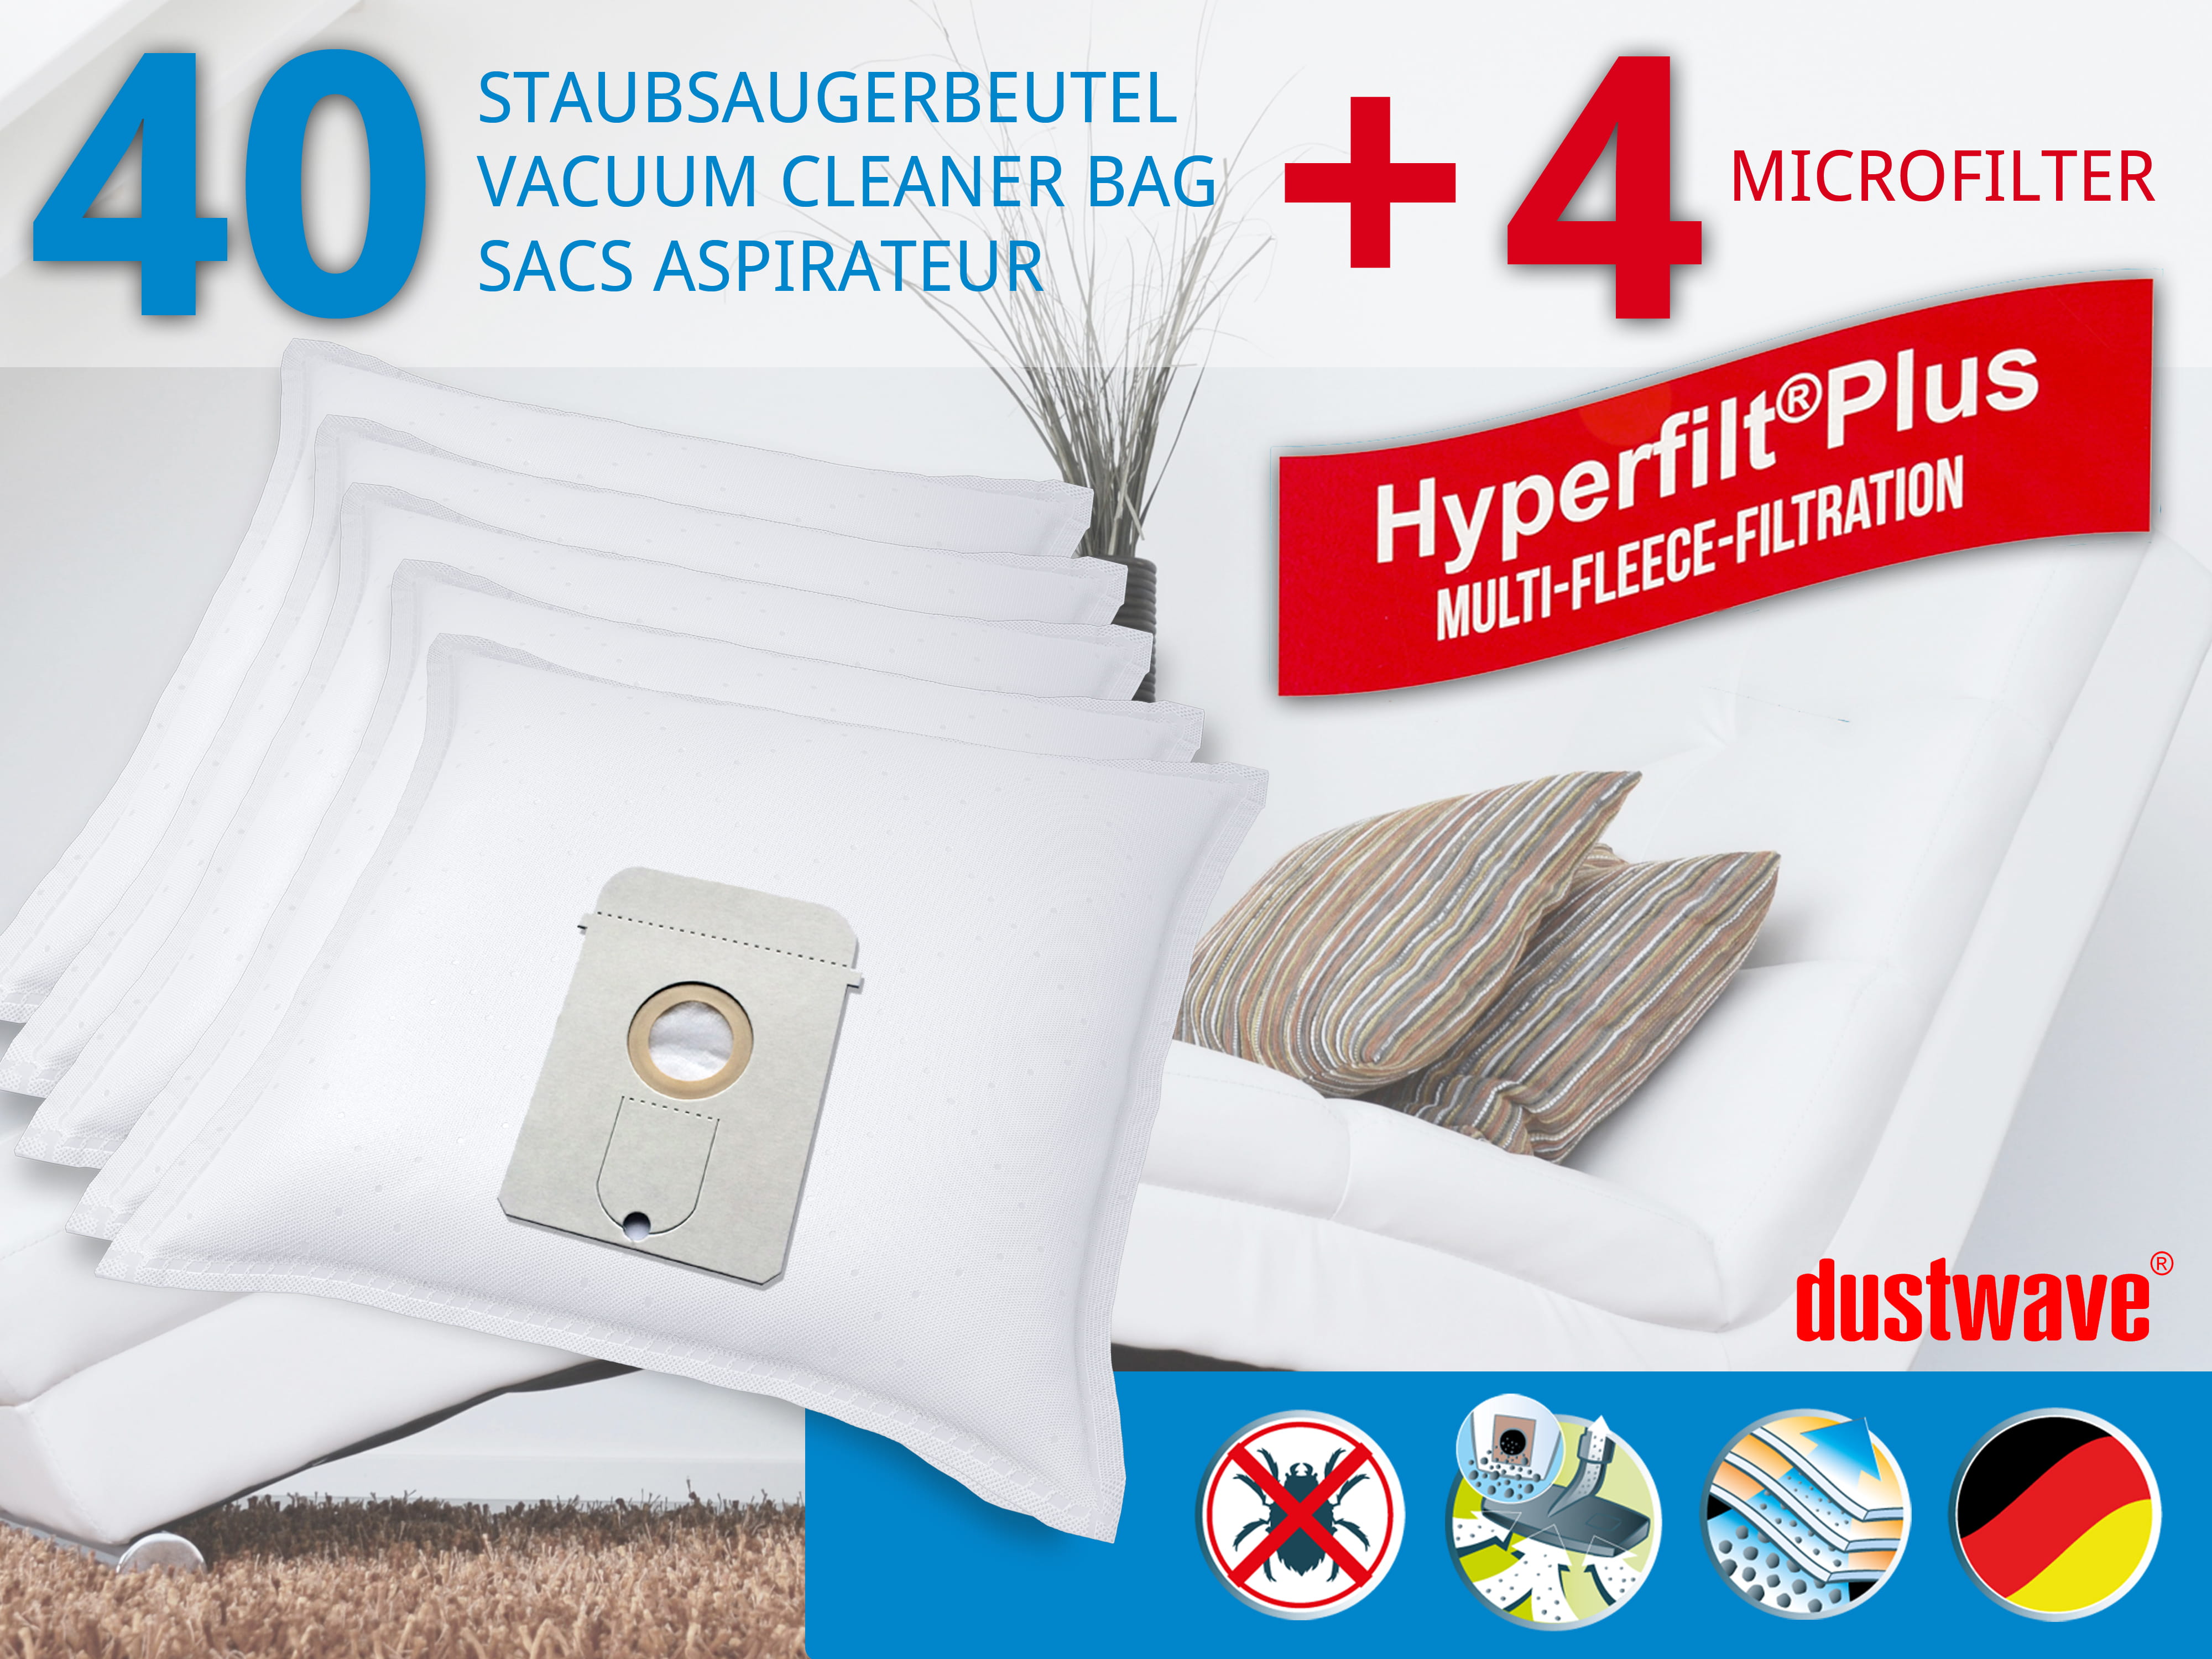 Dustwave® 40 Staubsaugerbeutel für AEG Vampyr 6209 Electronic - hocheffizient, mehrlagiges Mikrovlies mit Hygieneverschluss - Made in Germany